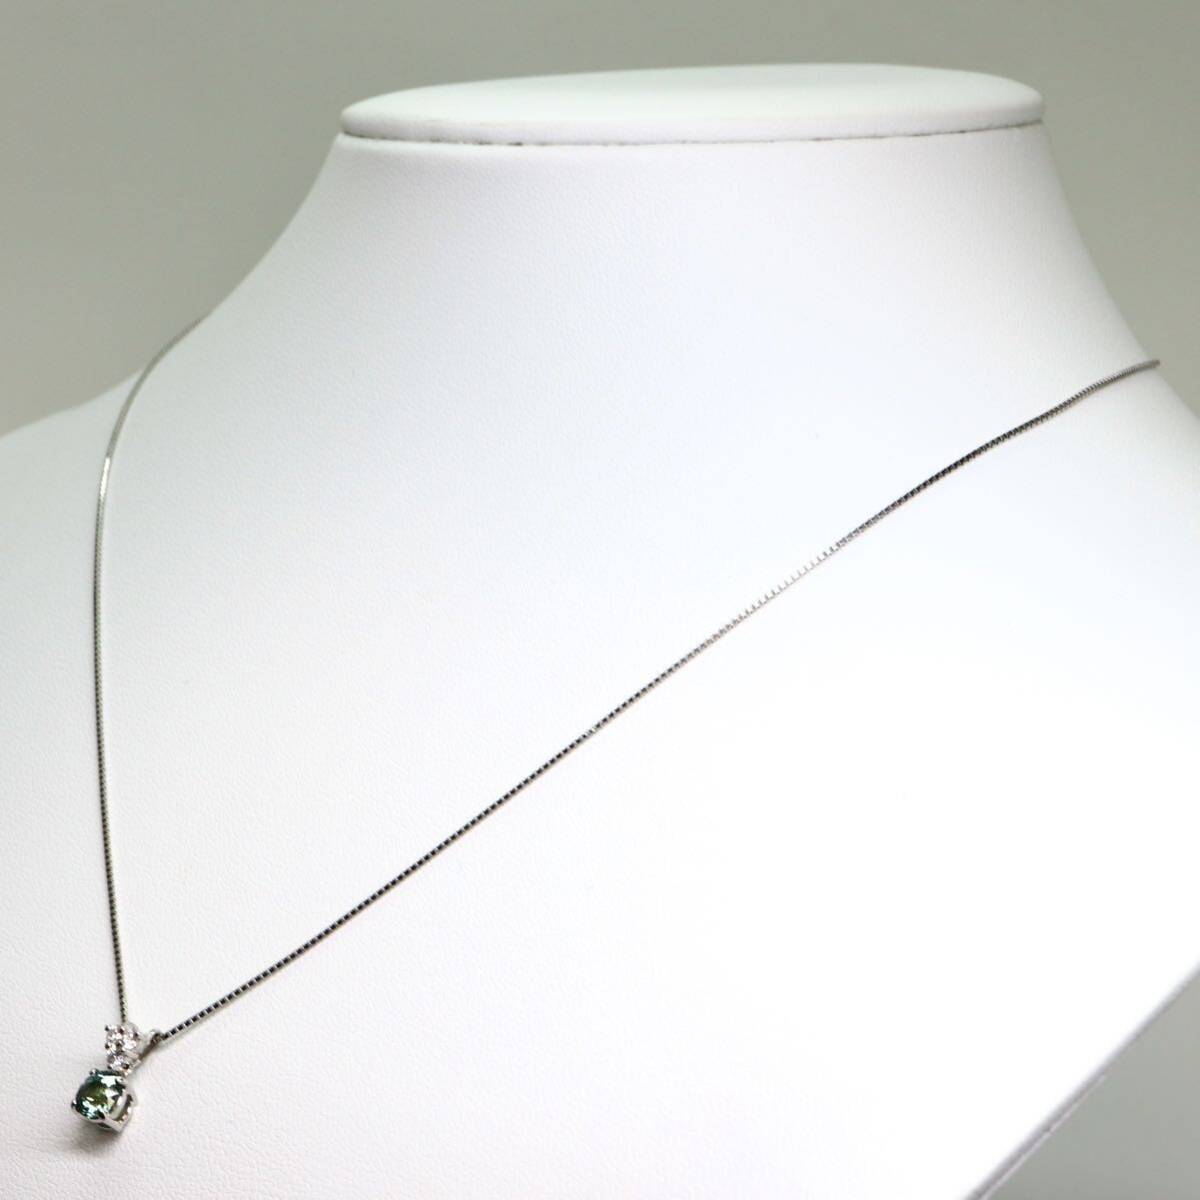 ソーティング付き!!《Pt900/Pt850 天然ダイヤモンド/天然サファイアネックレス》A 約3.1g diamond sapphire jewelry necklace EA5/EAの画像4